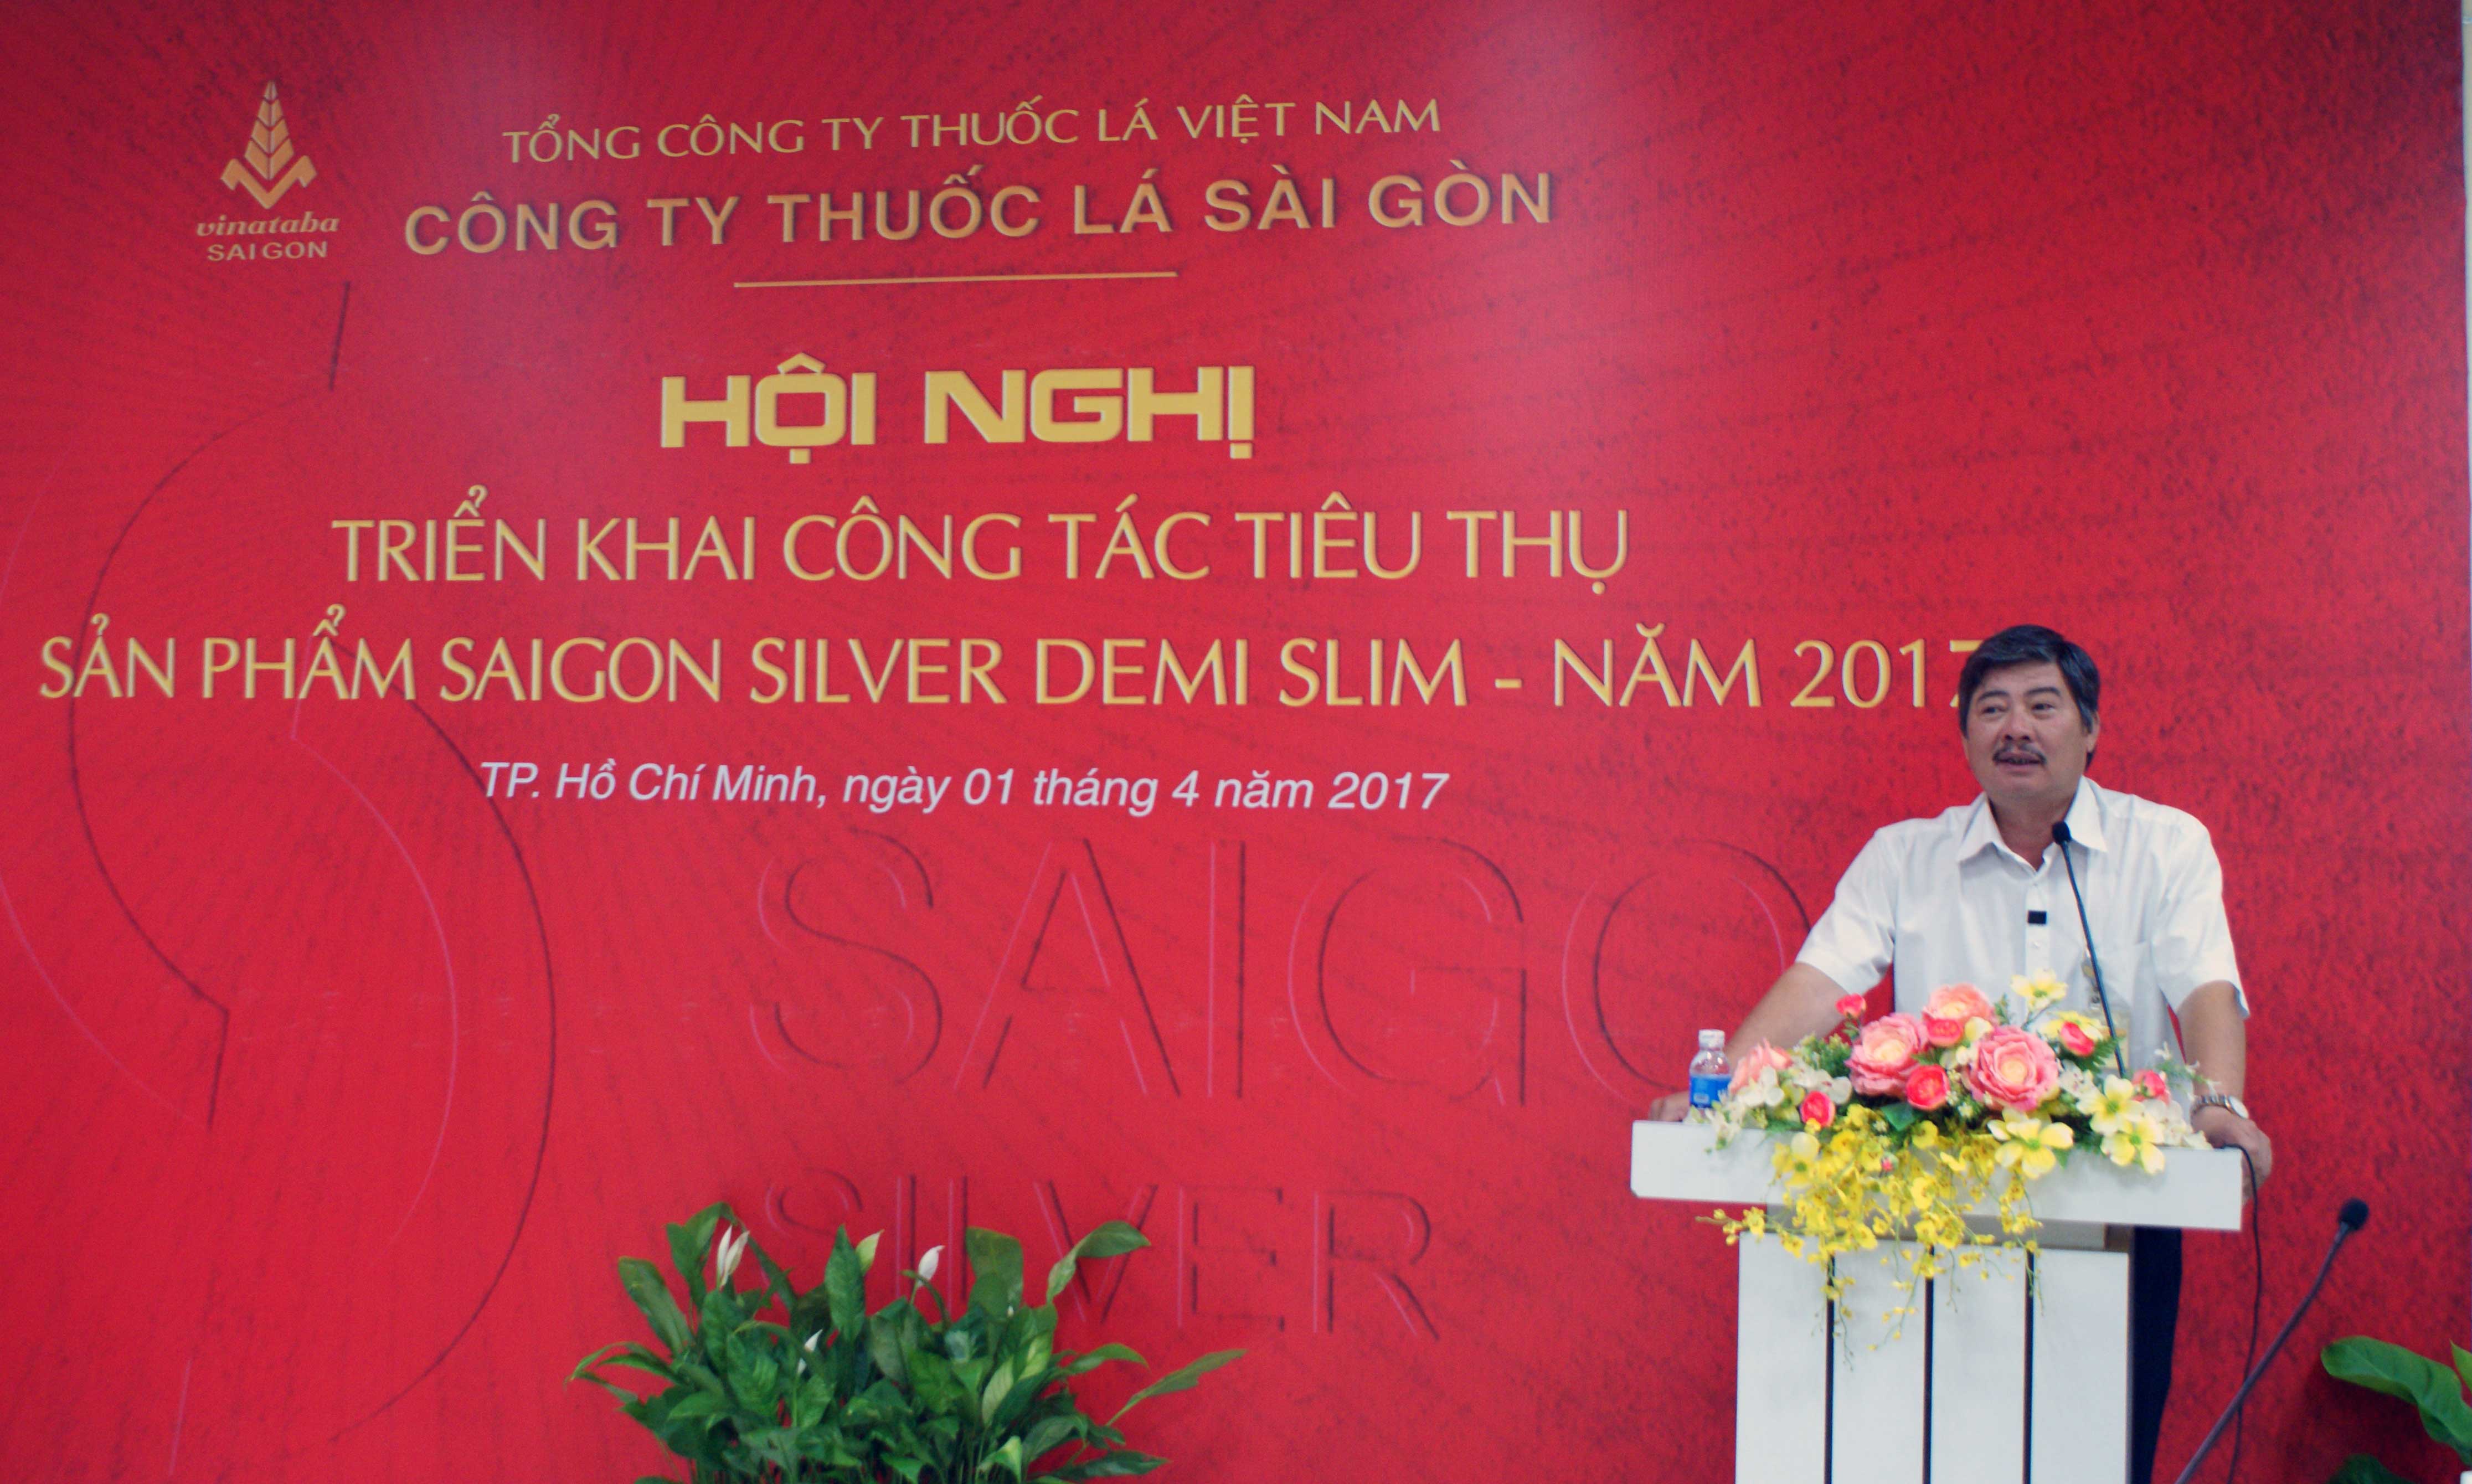 Ông Trịnh Xuân Quang - Phó Giám đốc phụ trách công tác tiêu thụ của Công ty Thuốc lá Sài Gòn phát biểu tại hội nghị  